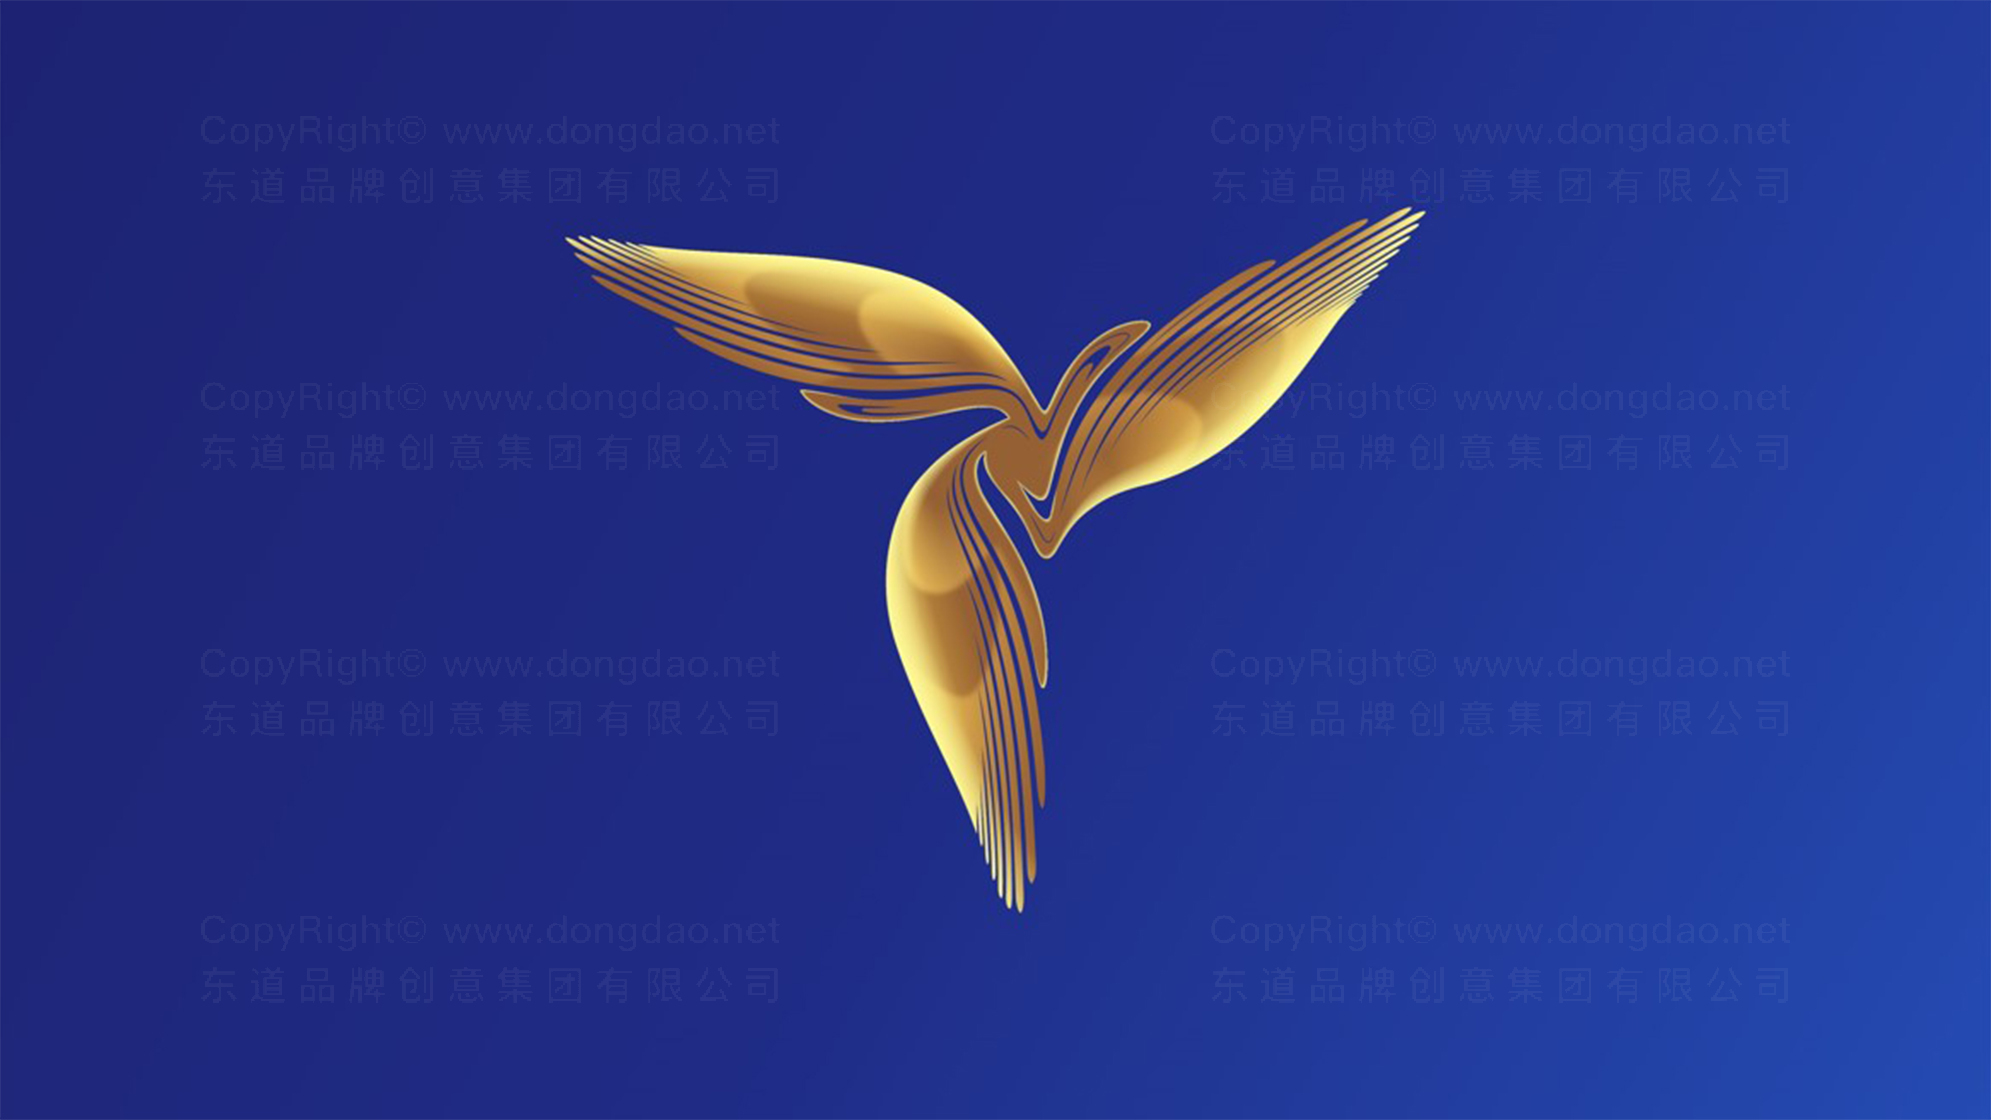 海尔三翼鸟logo设计图片素材大全案例欣赏